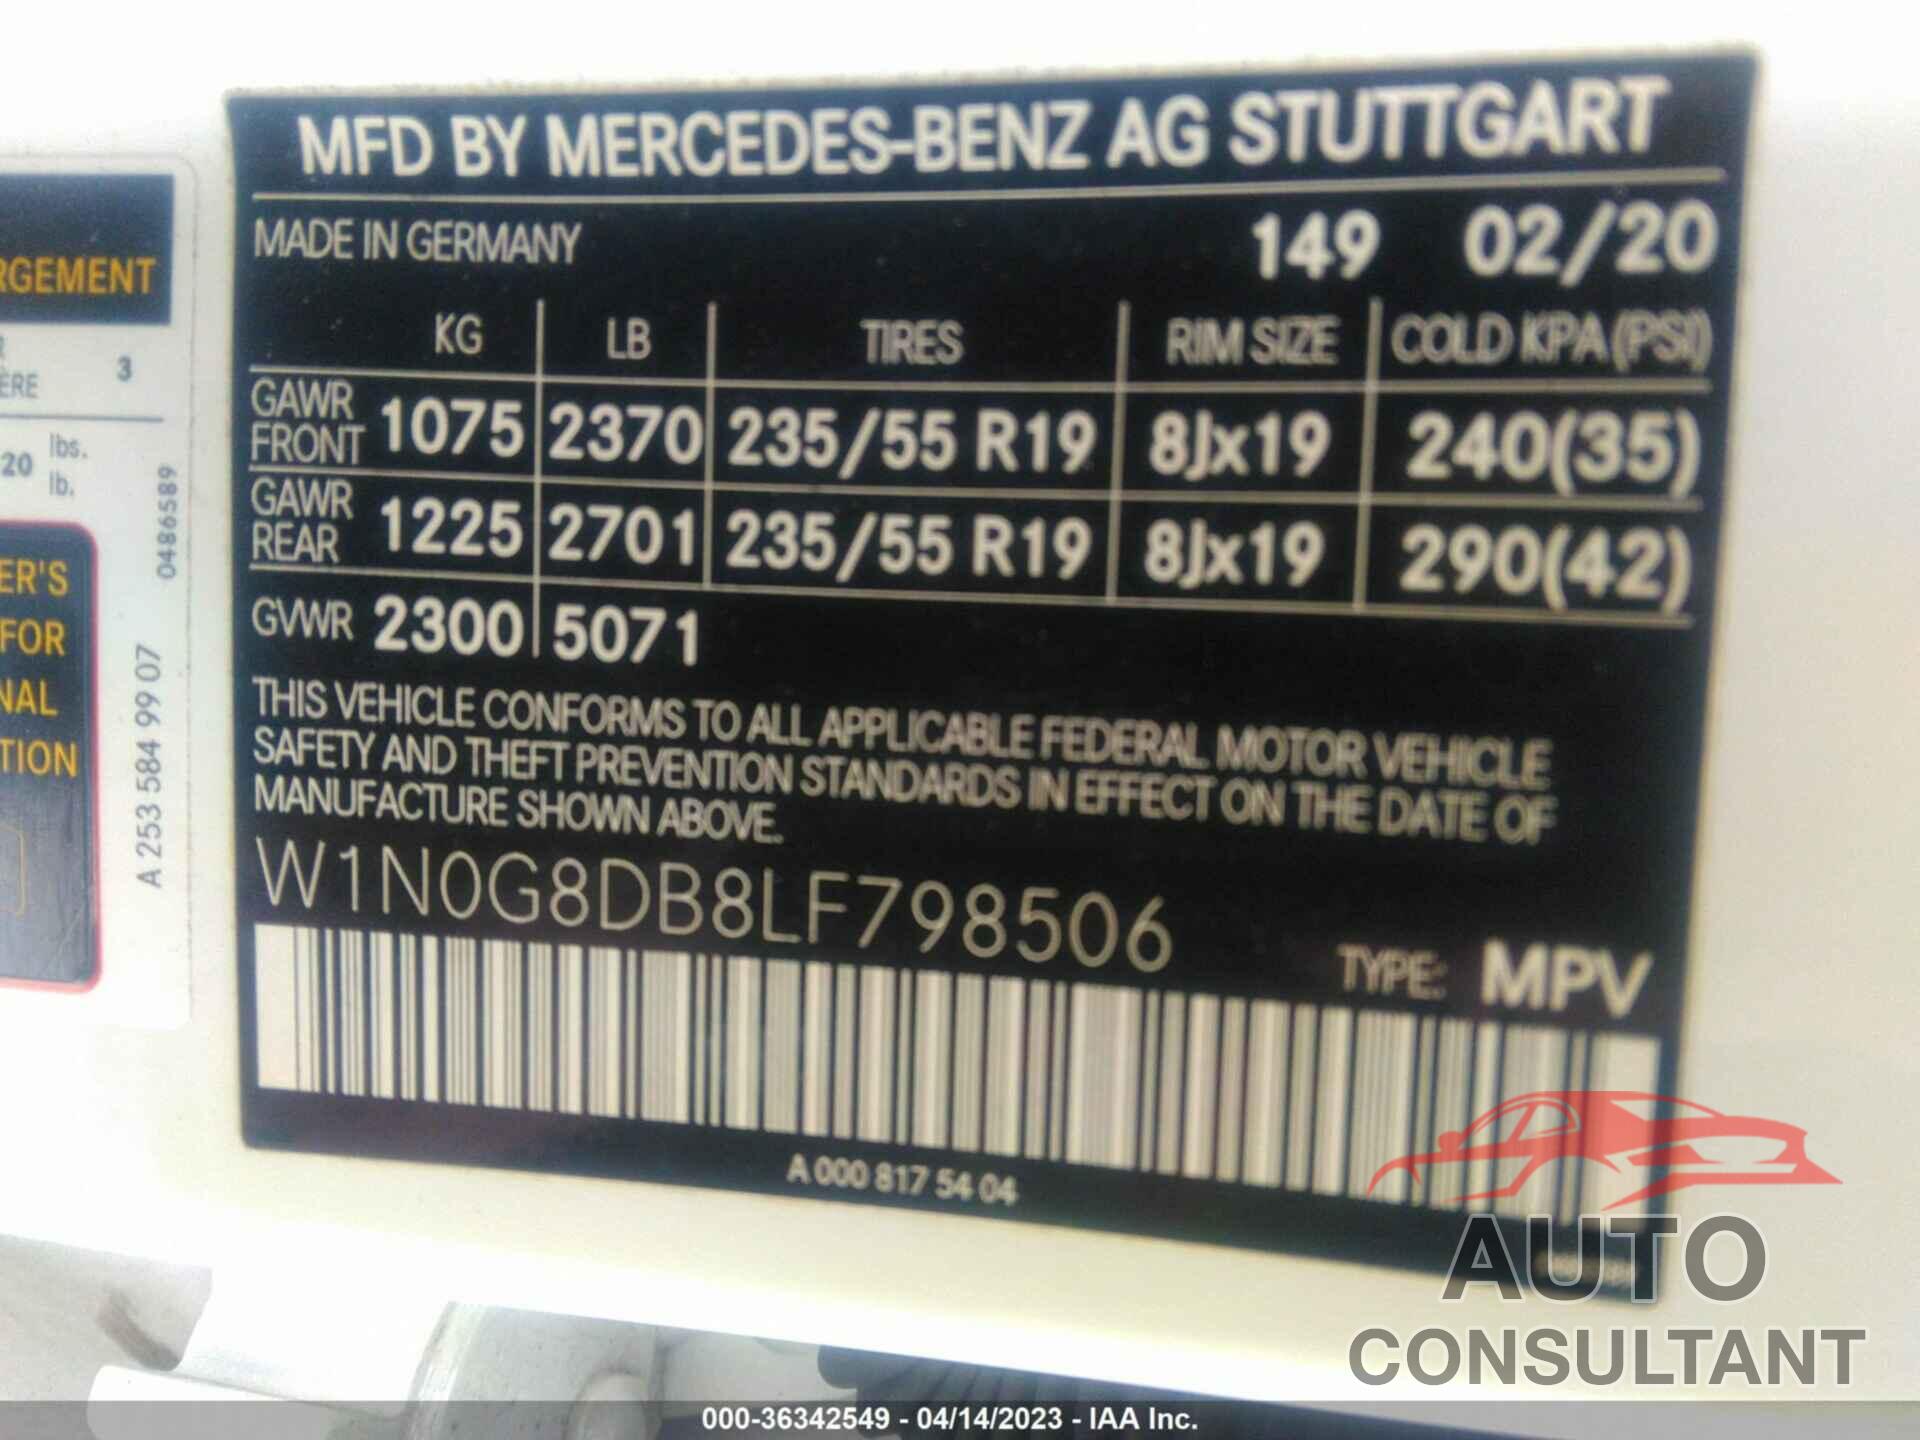 MERCEDES-BENZ GLC 2020 - W1N0G8DB8LF798506